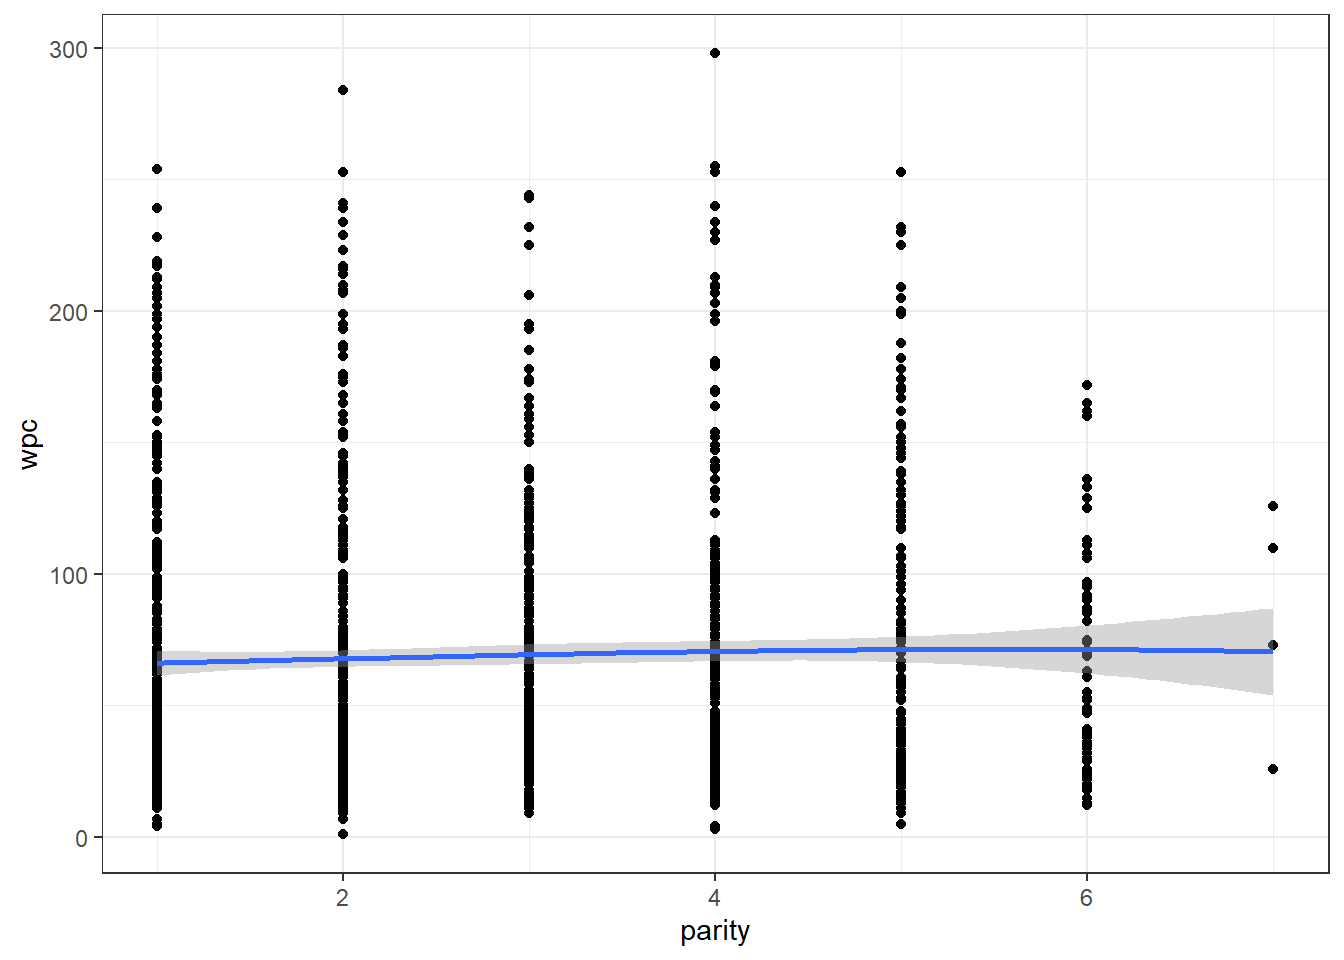 Relation entre parité (parity) et le nombre de jours jusqu’à la saillie fécondante (wpc) avec courbe lissée avec un facteur de 2.